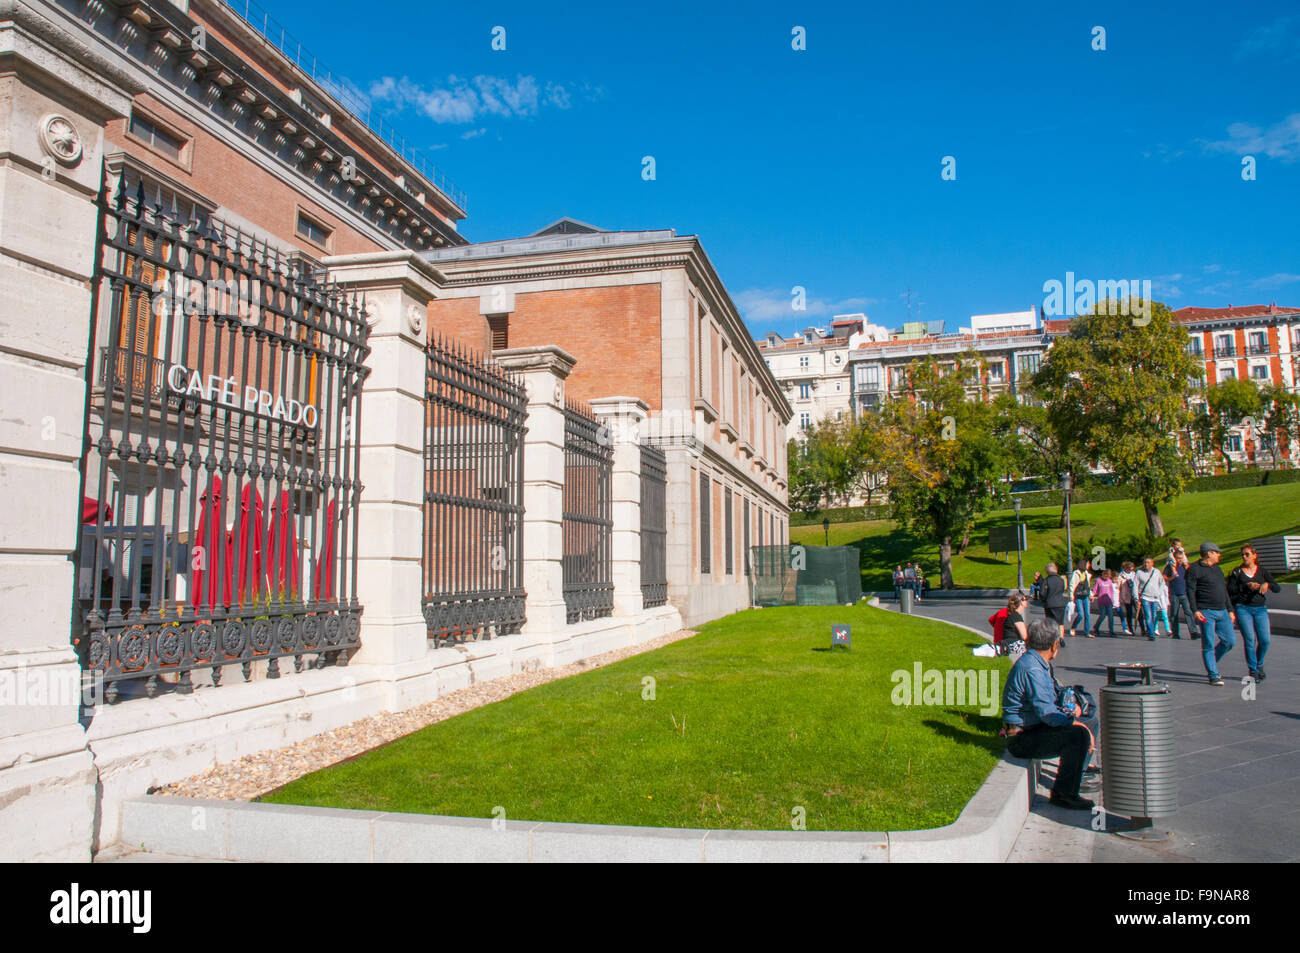 Cafe Prado, next to The Prado Museum. Madrid, Spain. Stock Photo